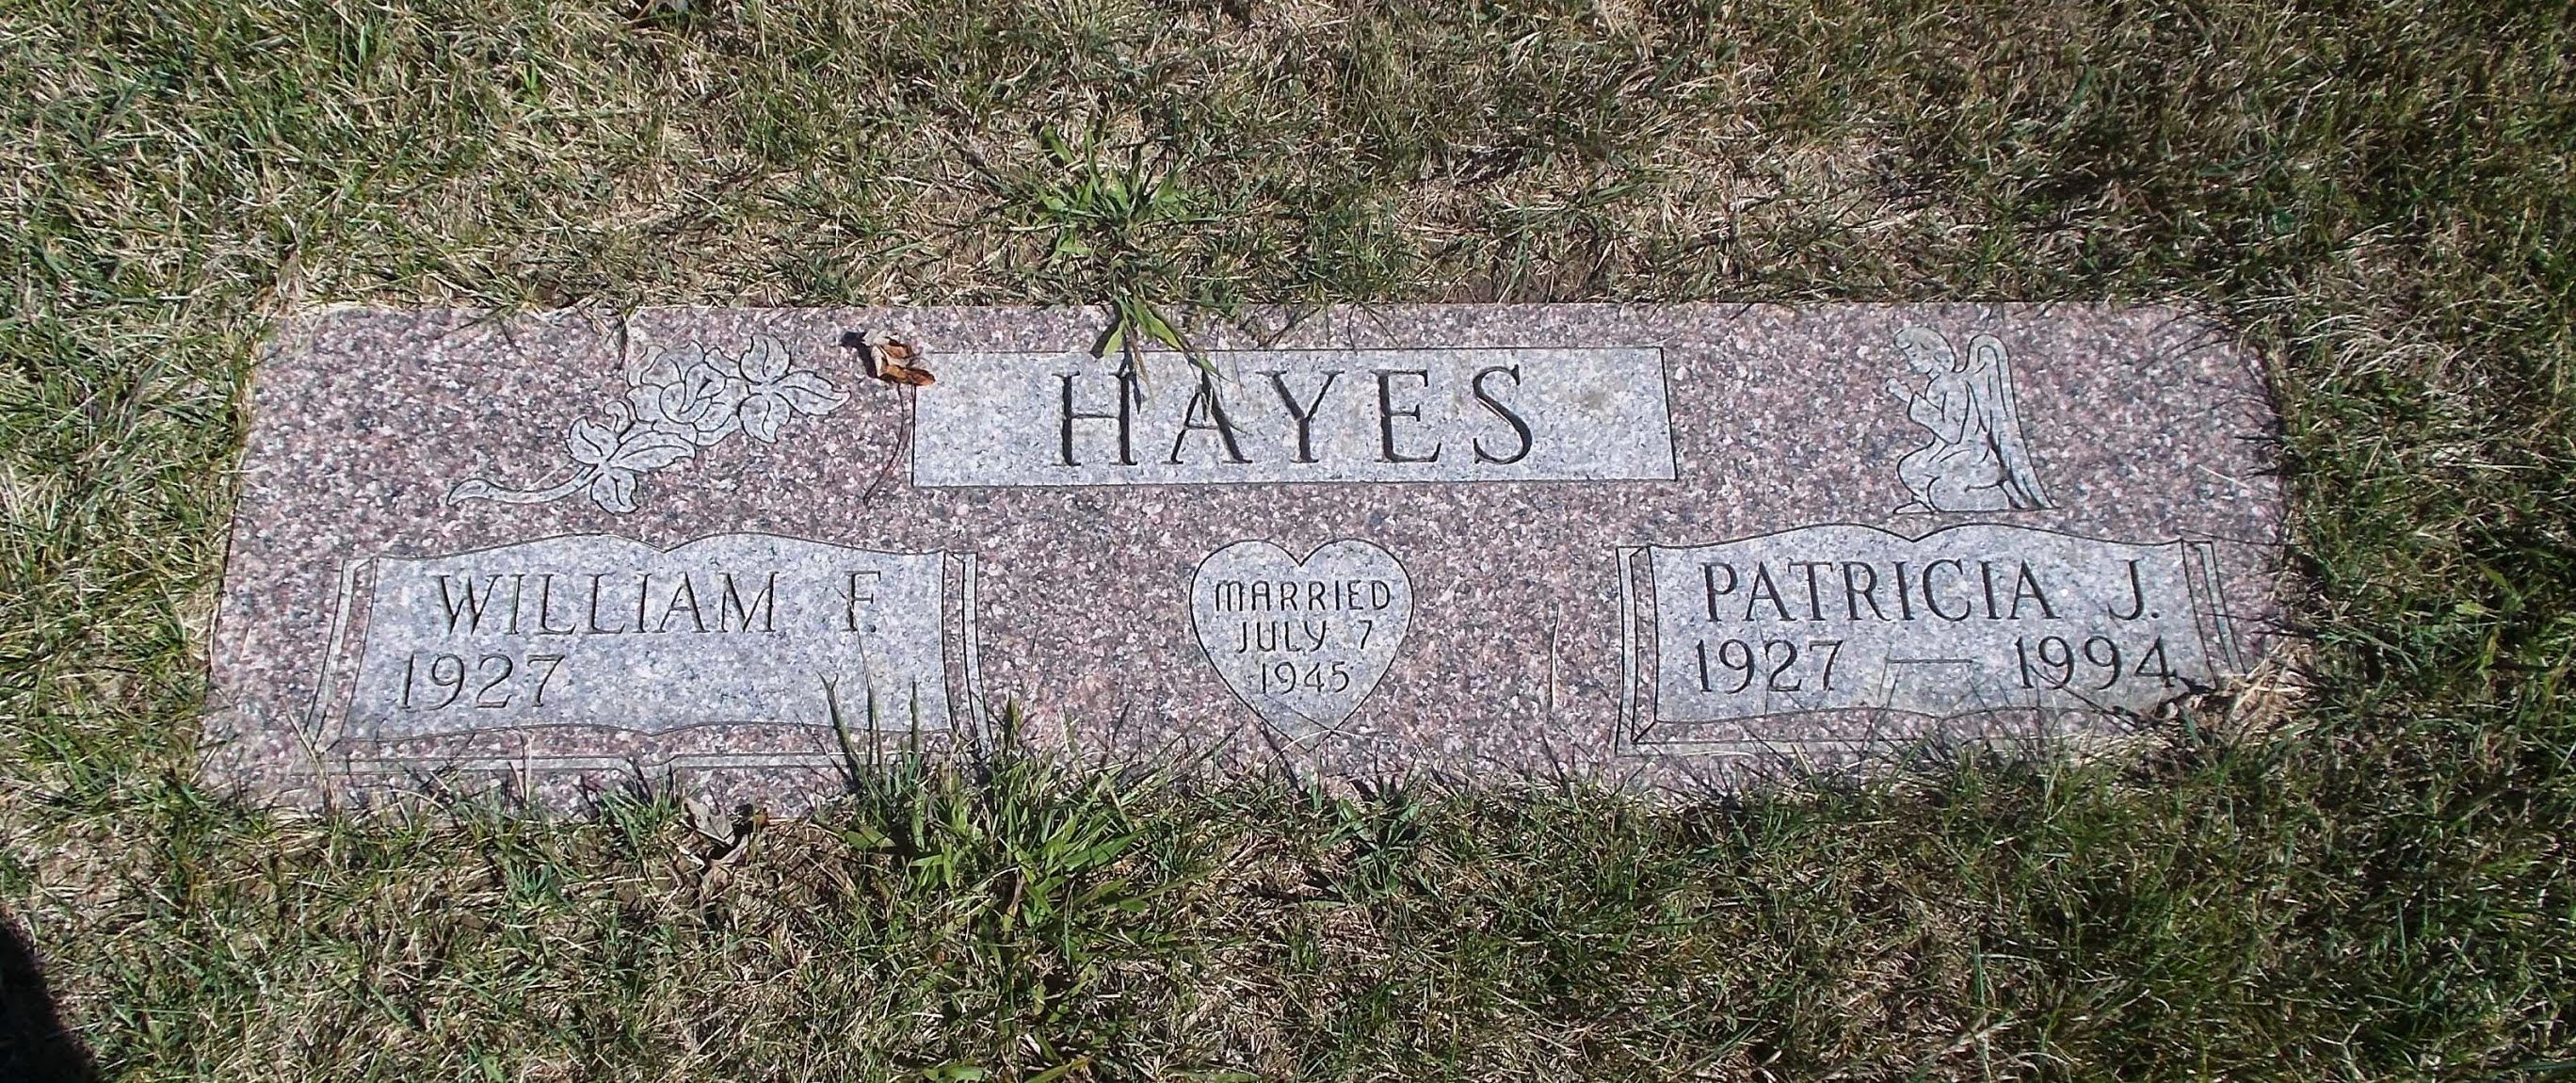 William F Hayes